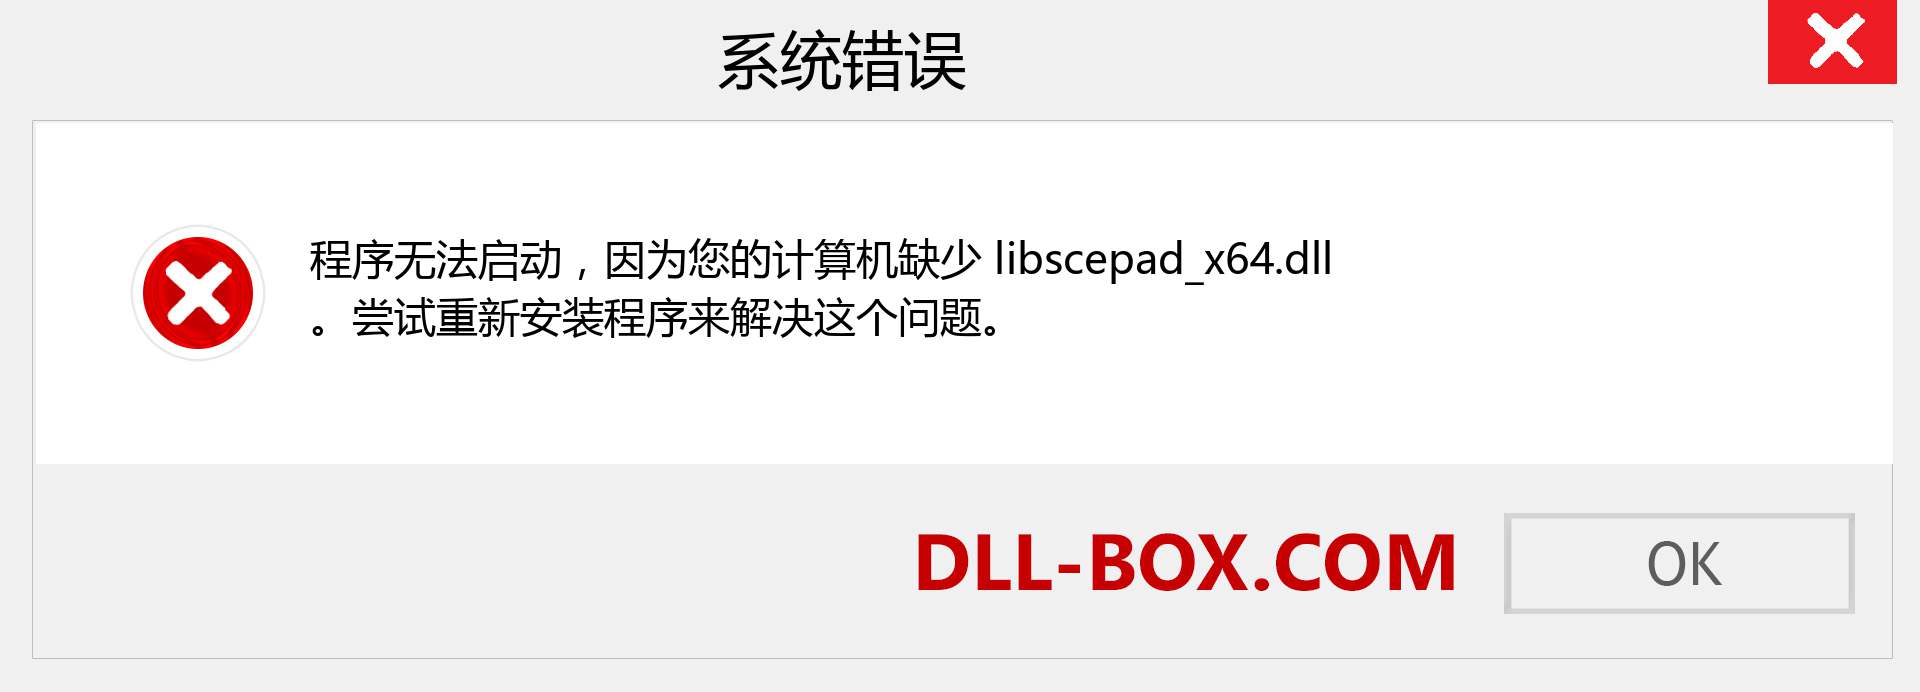 libscepad_x64.dll 文件丢失？。 适用于 Windows 7、8、10 的下载 - 修复 Windows、照片、图像上的 libscepad_x64 dll 丢失错误